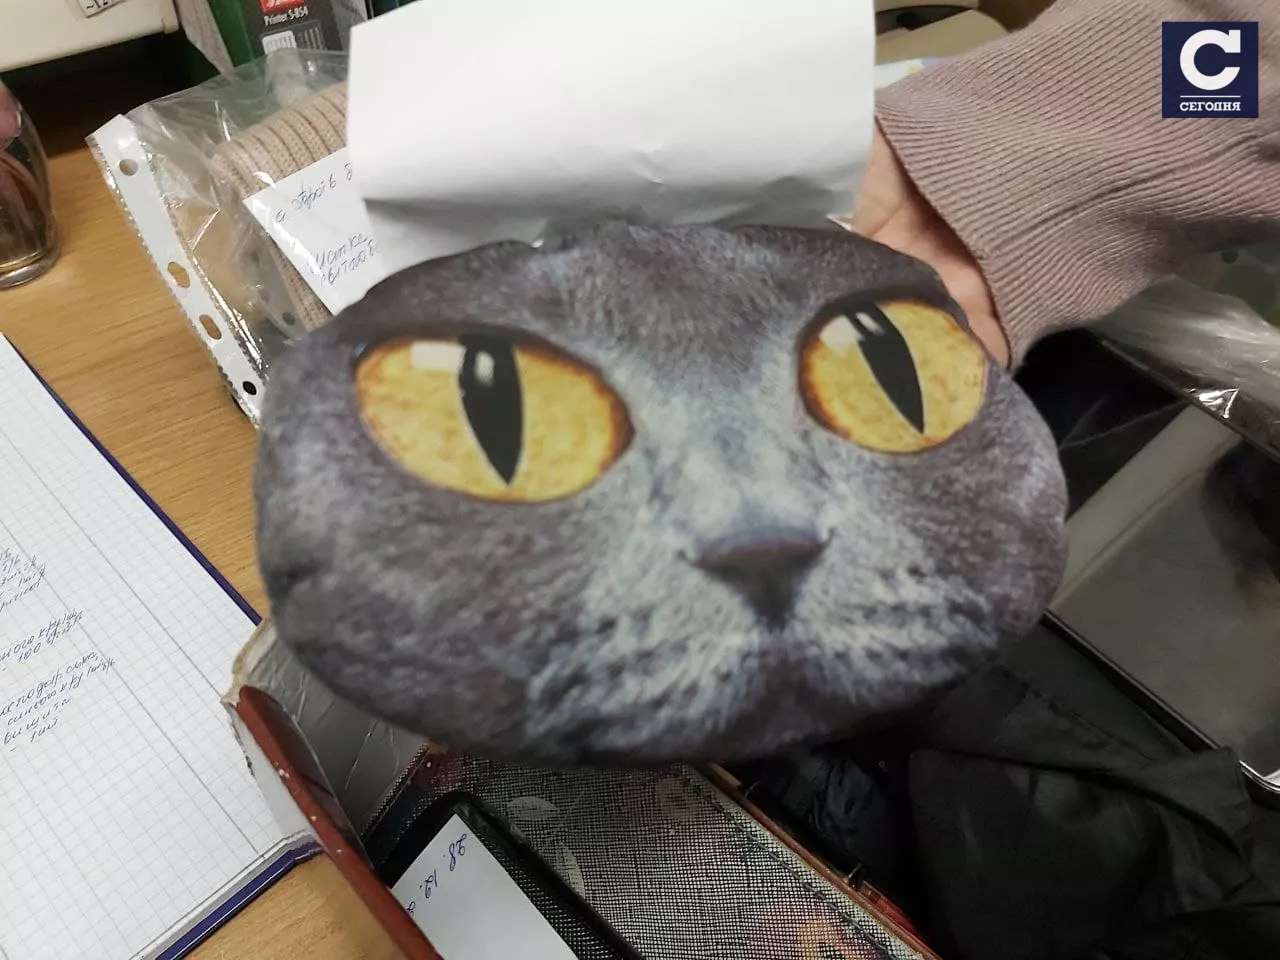 Оригинальная сумка с мордочкой кота/ фото "Сегодня"